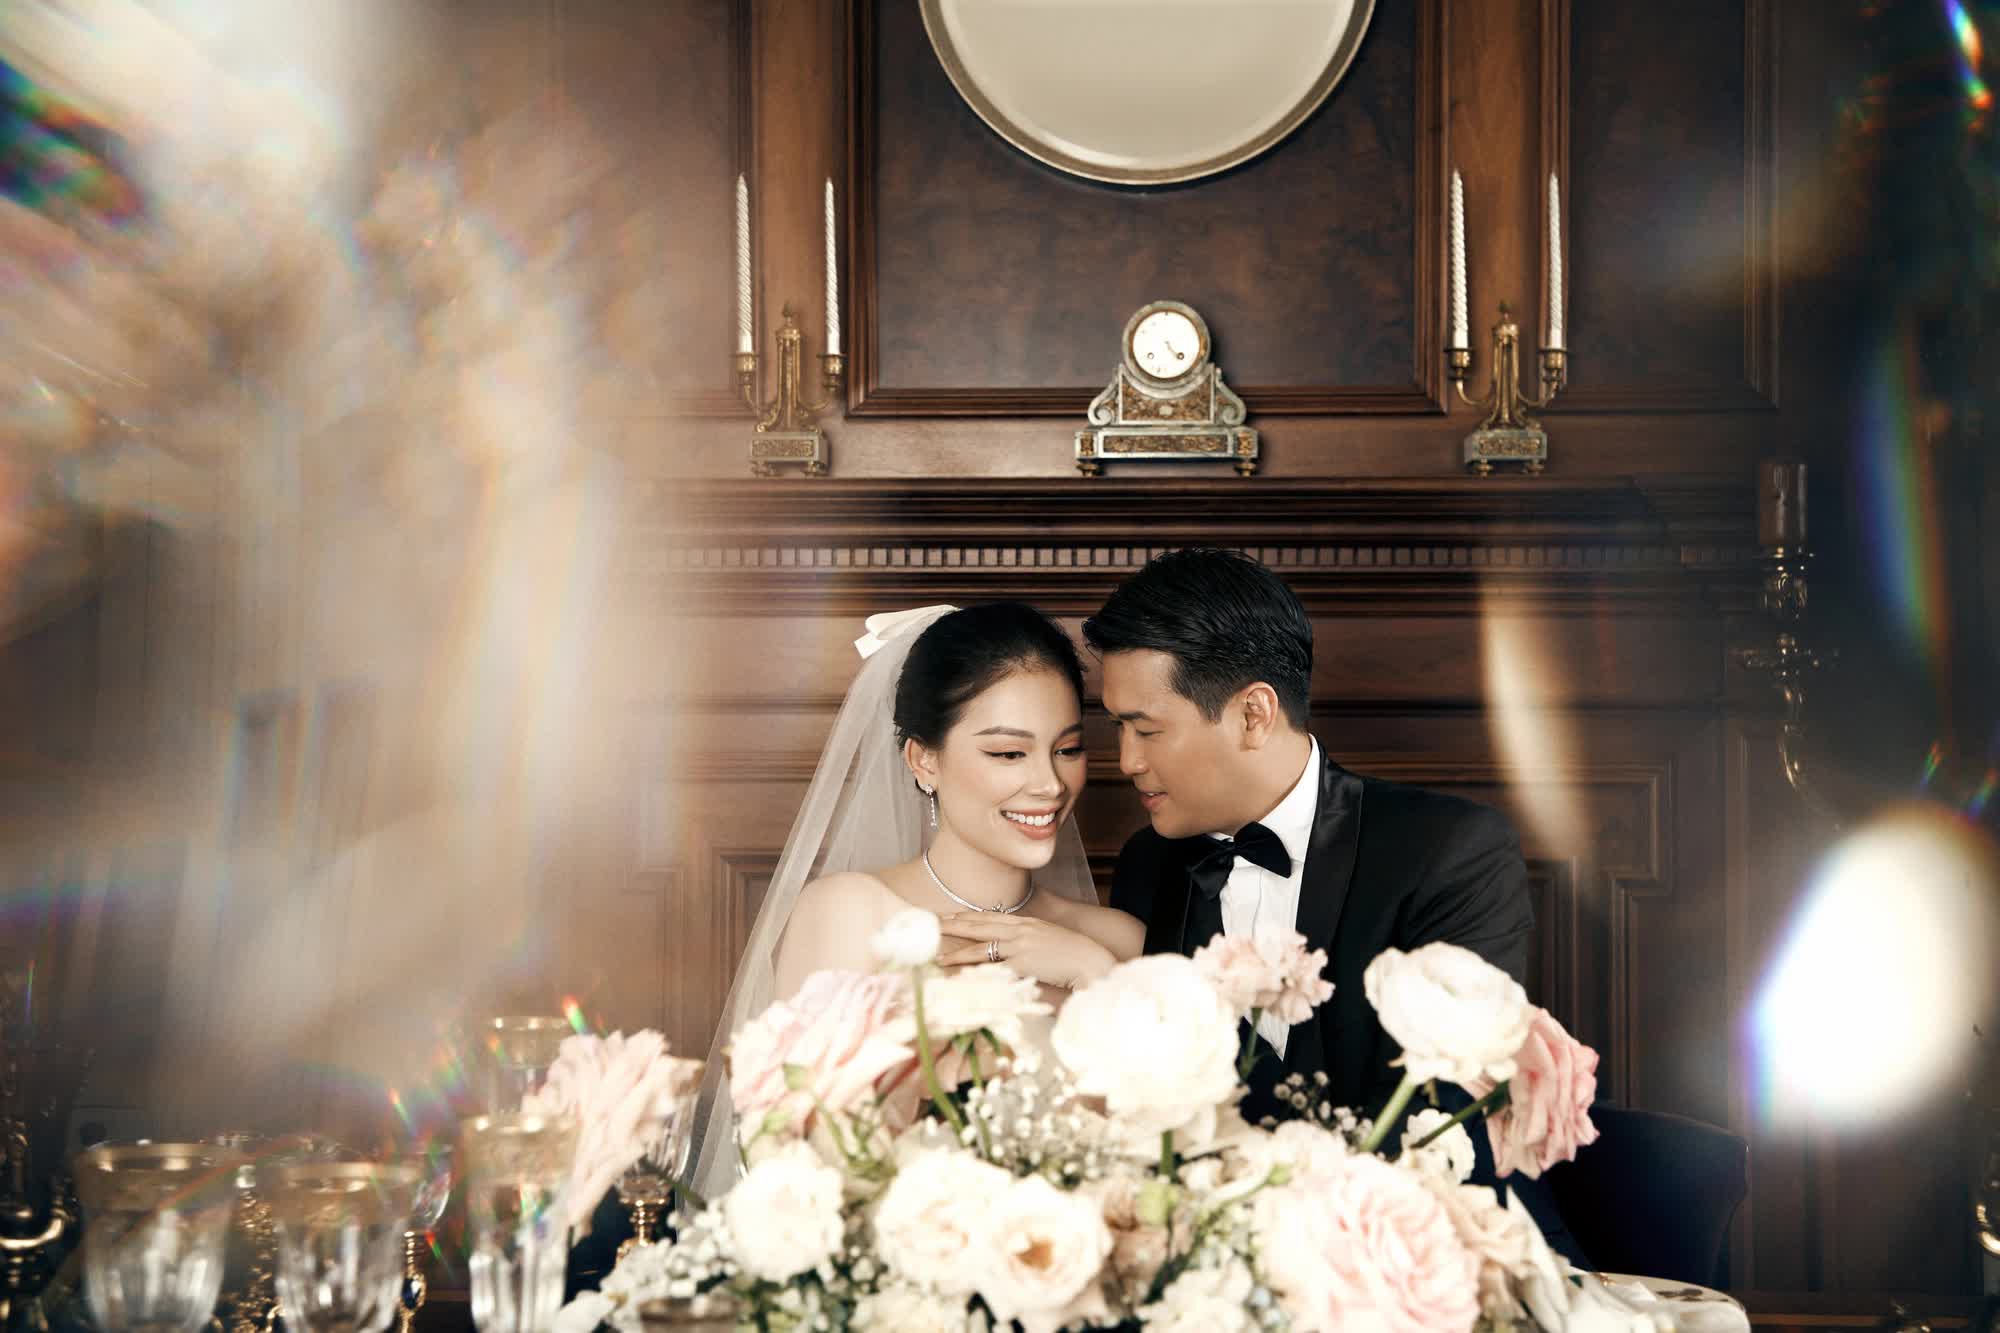 Ngắm nhìn trọn bộ ảnh cưới giữa Linh Rin và Phillip Nguyễn: Chỉ vài bức hình cũng đủ biết độ xa hoa của hôn lễ - Ảnh 4.